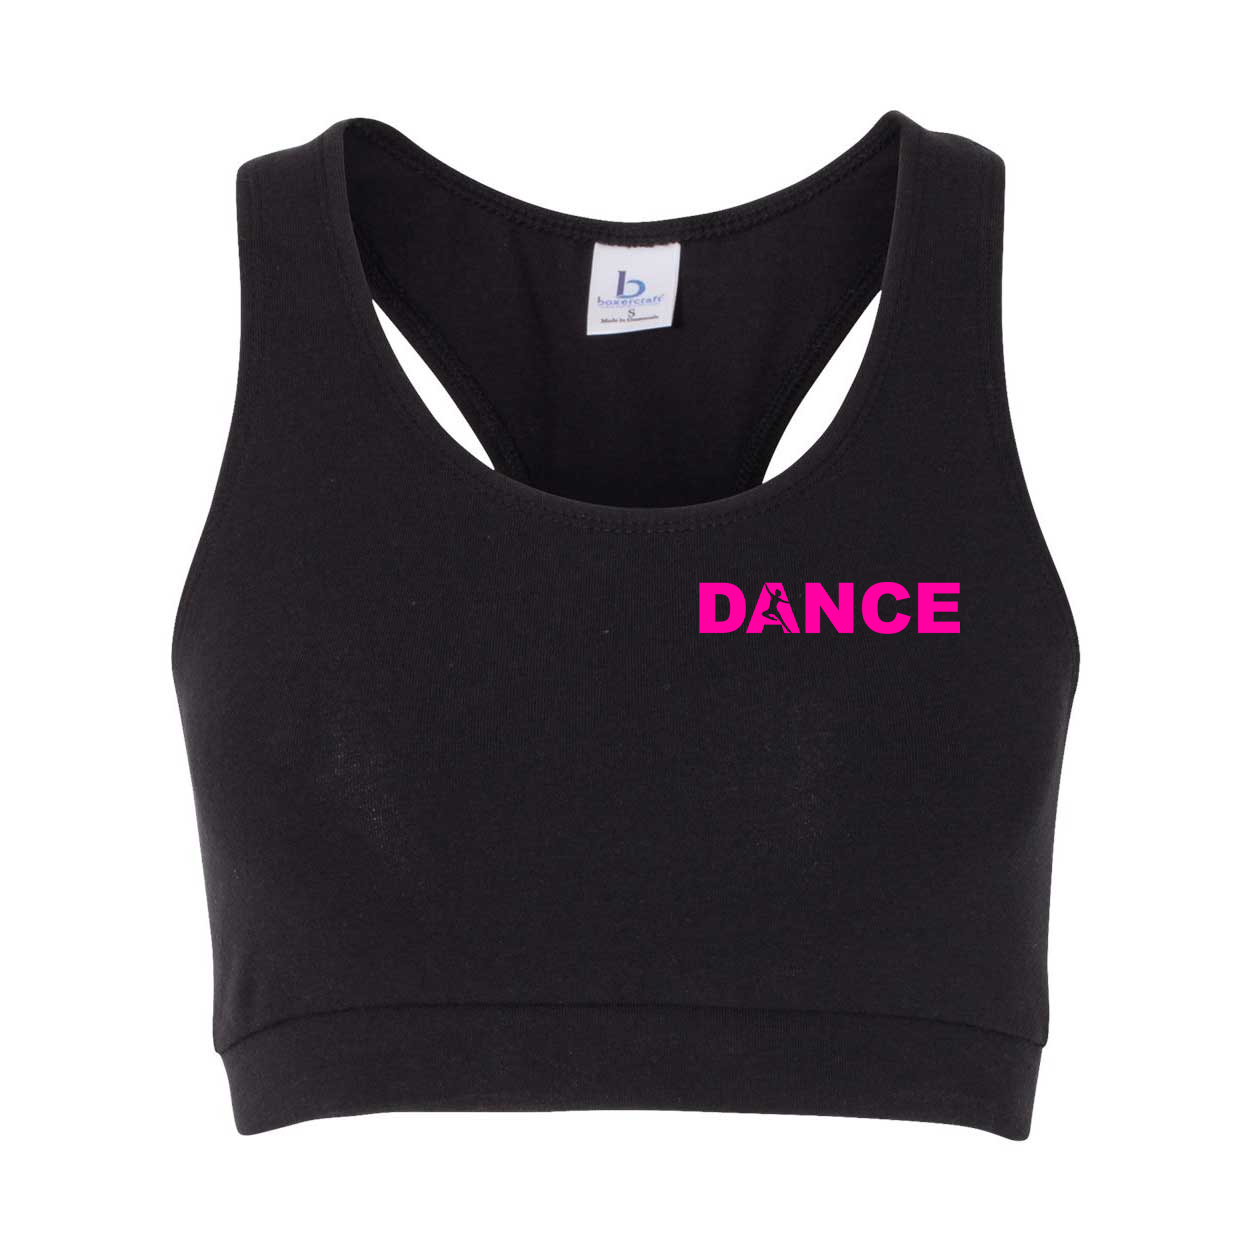 https://lifebrand.co/wp-content/blogs.dir/147/files/2020/05/dance-logo-pink-chest-sports-bra-71004-165481.jpg